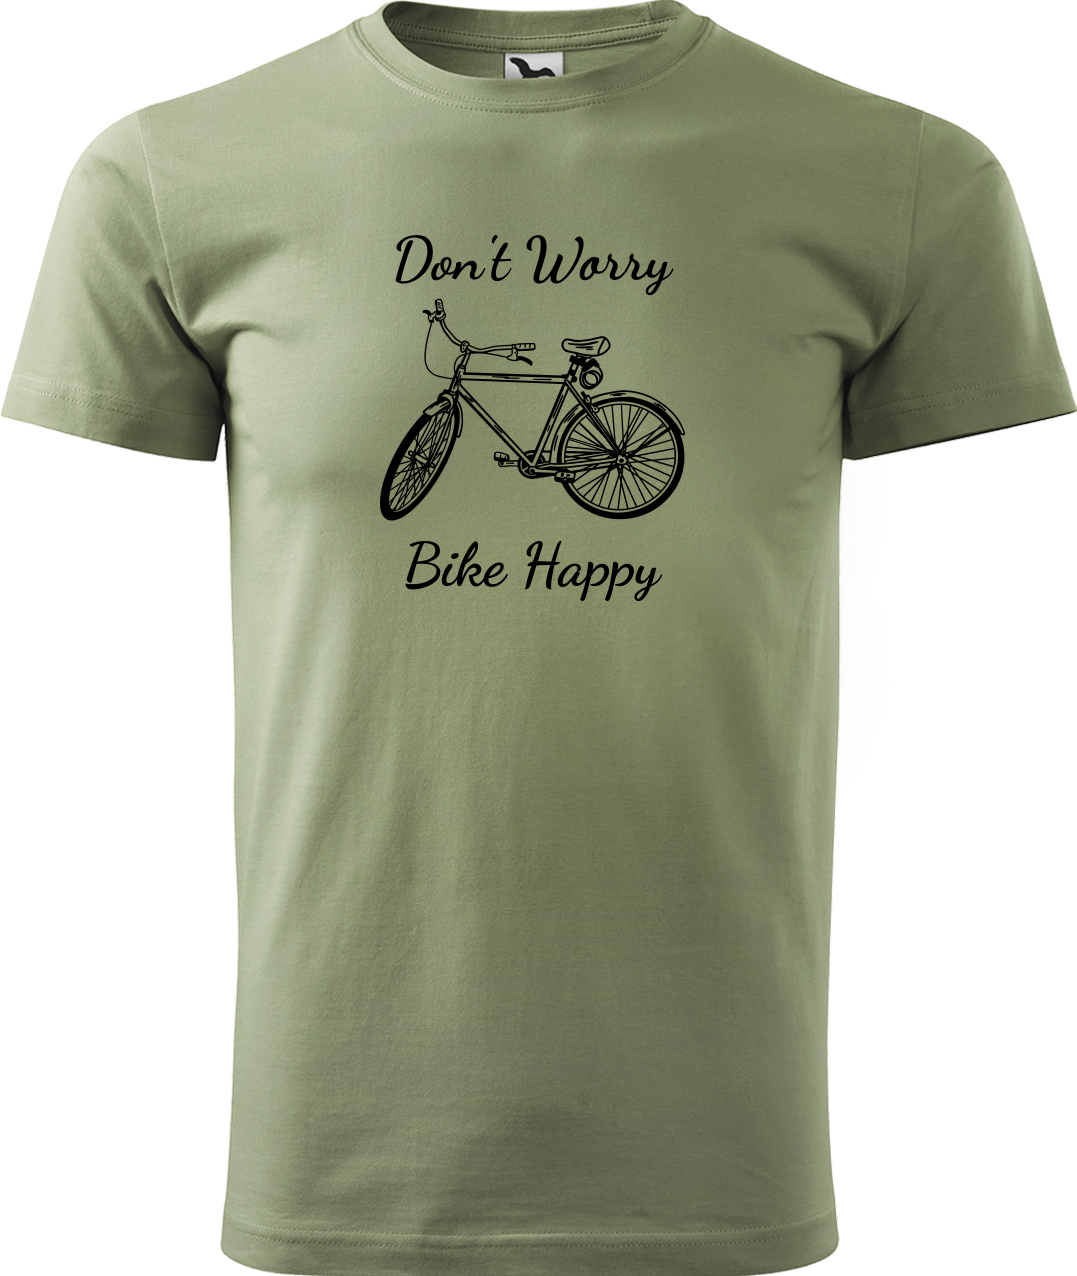 Pánské tričko s kolem - Don't Worry Bike Happy Velikost: XL, Barva: Světlá khaki (28)